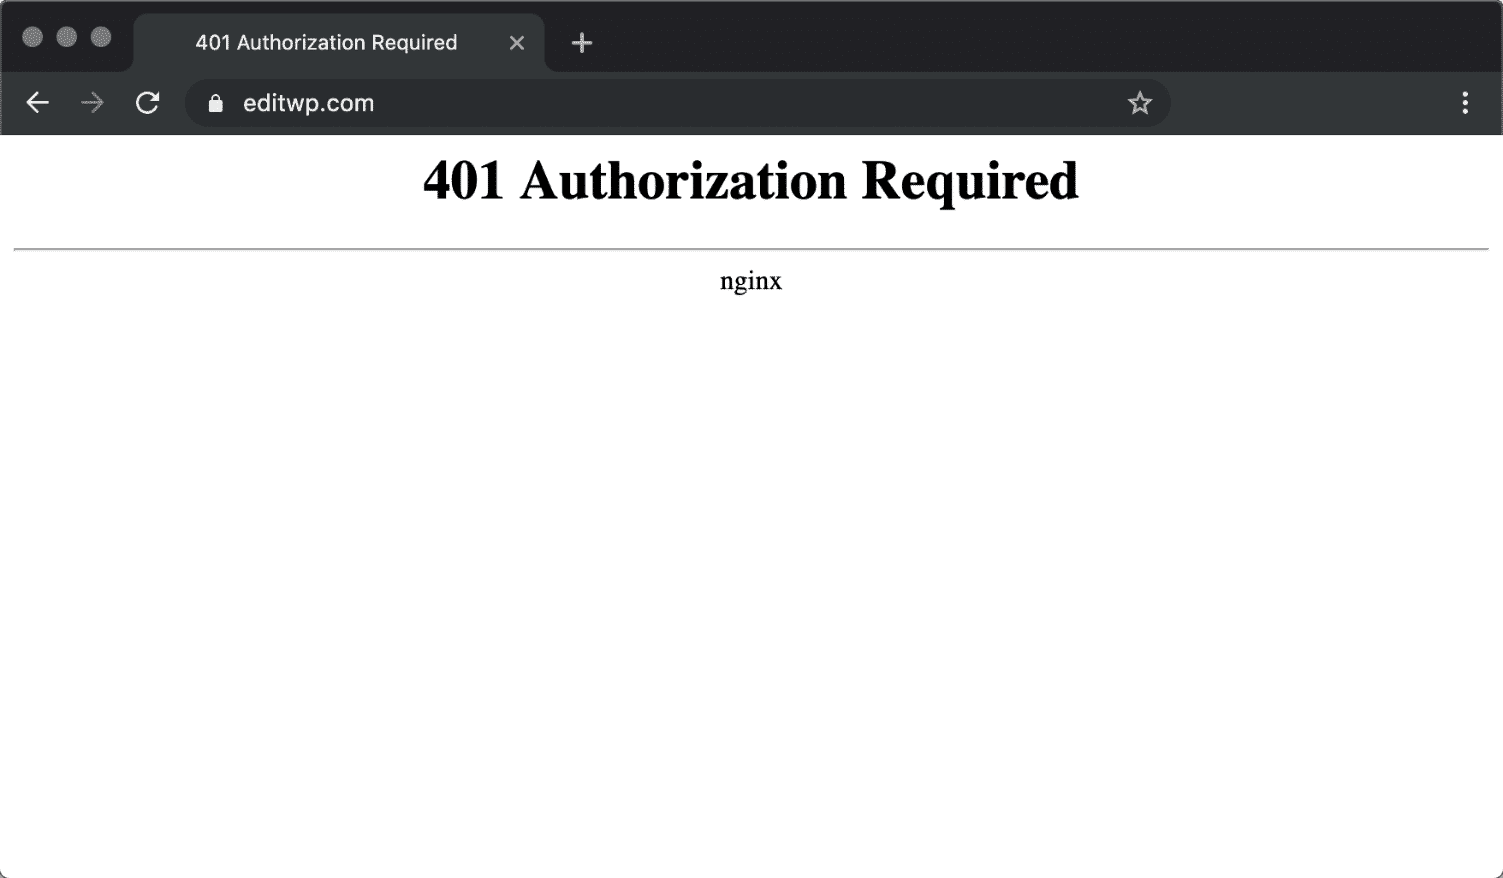 Chromeの「401 Authorization Required」エラーメッセージ